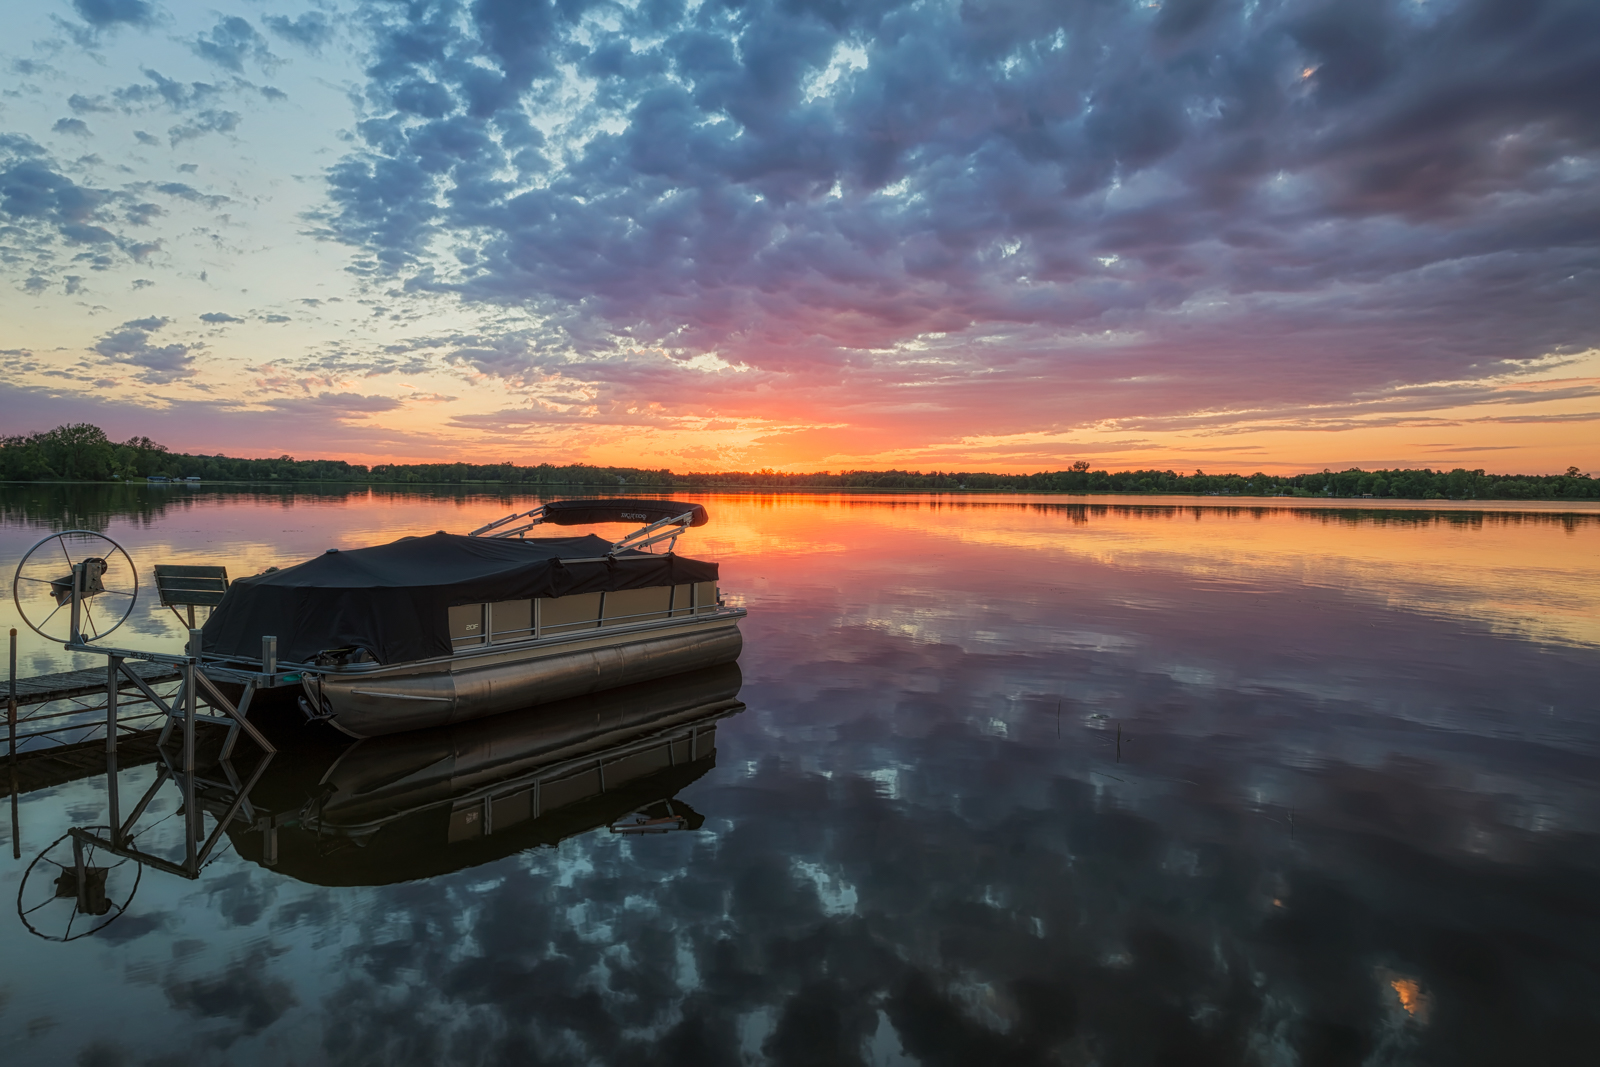 Pontoon Boat at Sunset on Dead Lake, Minnesota